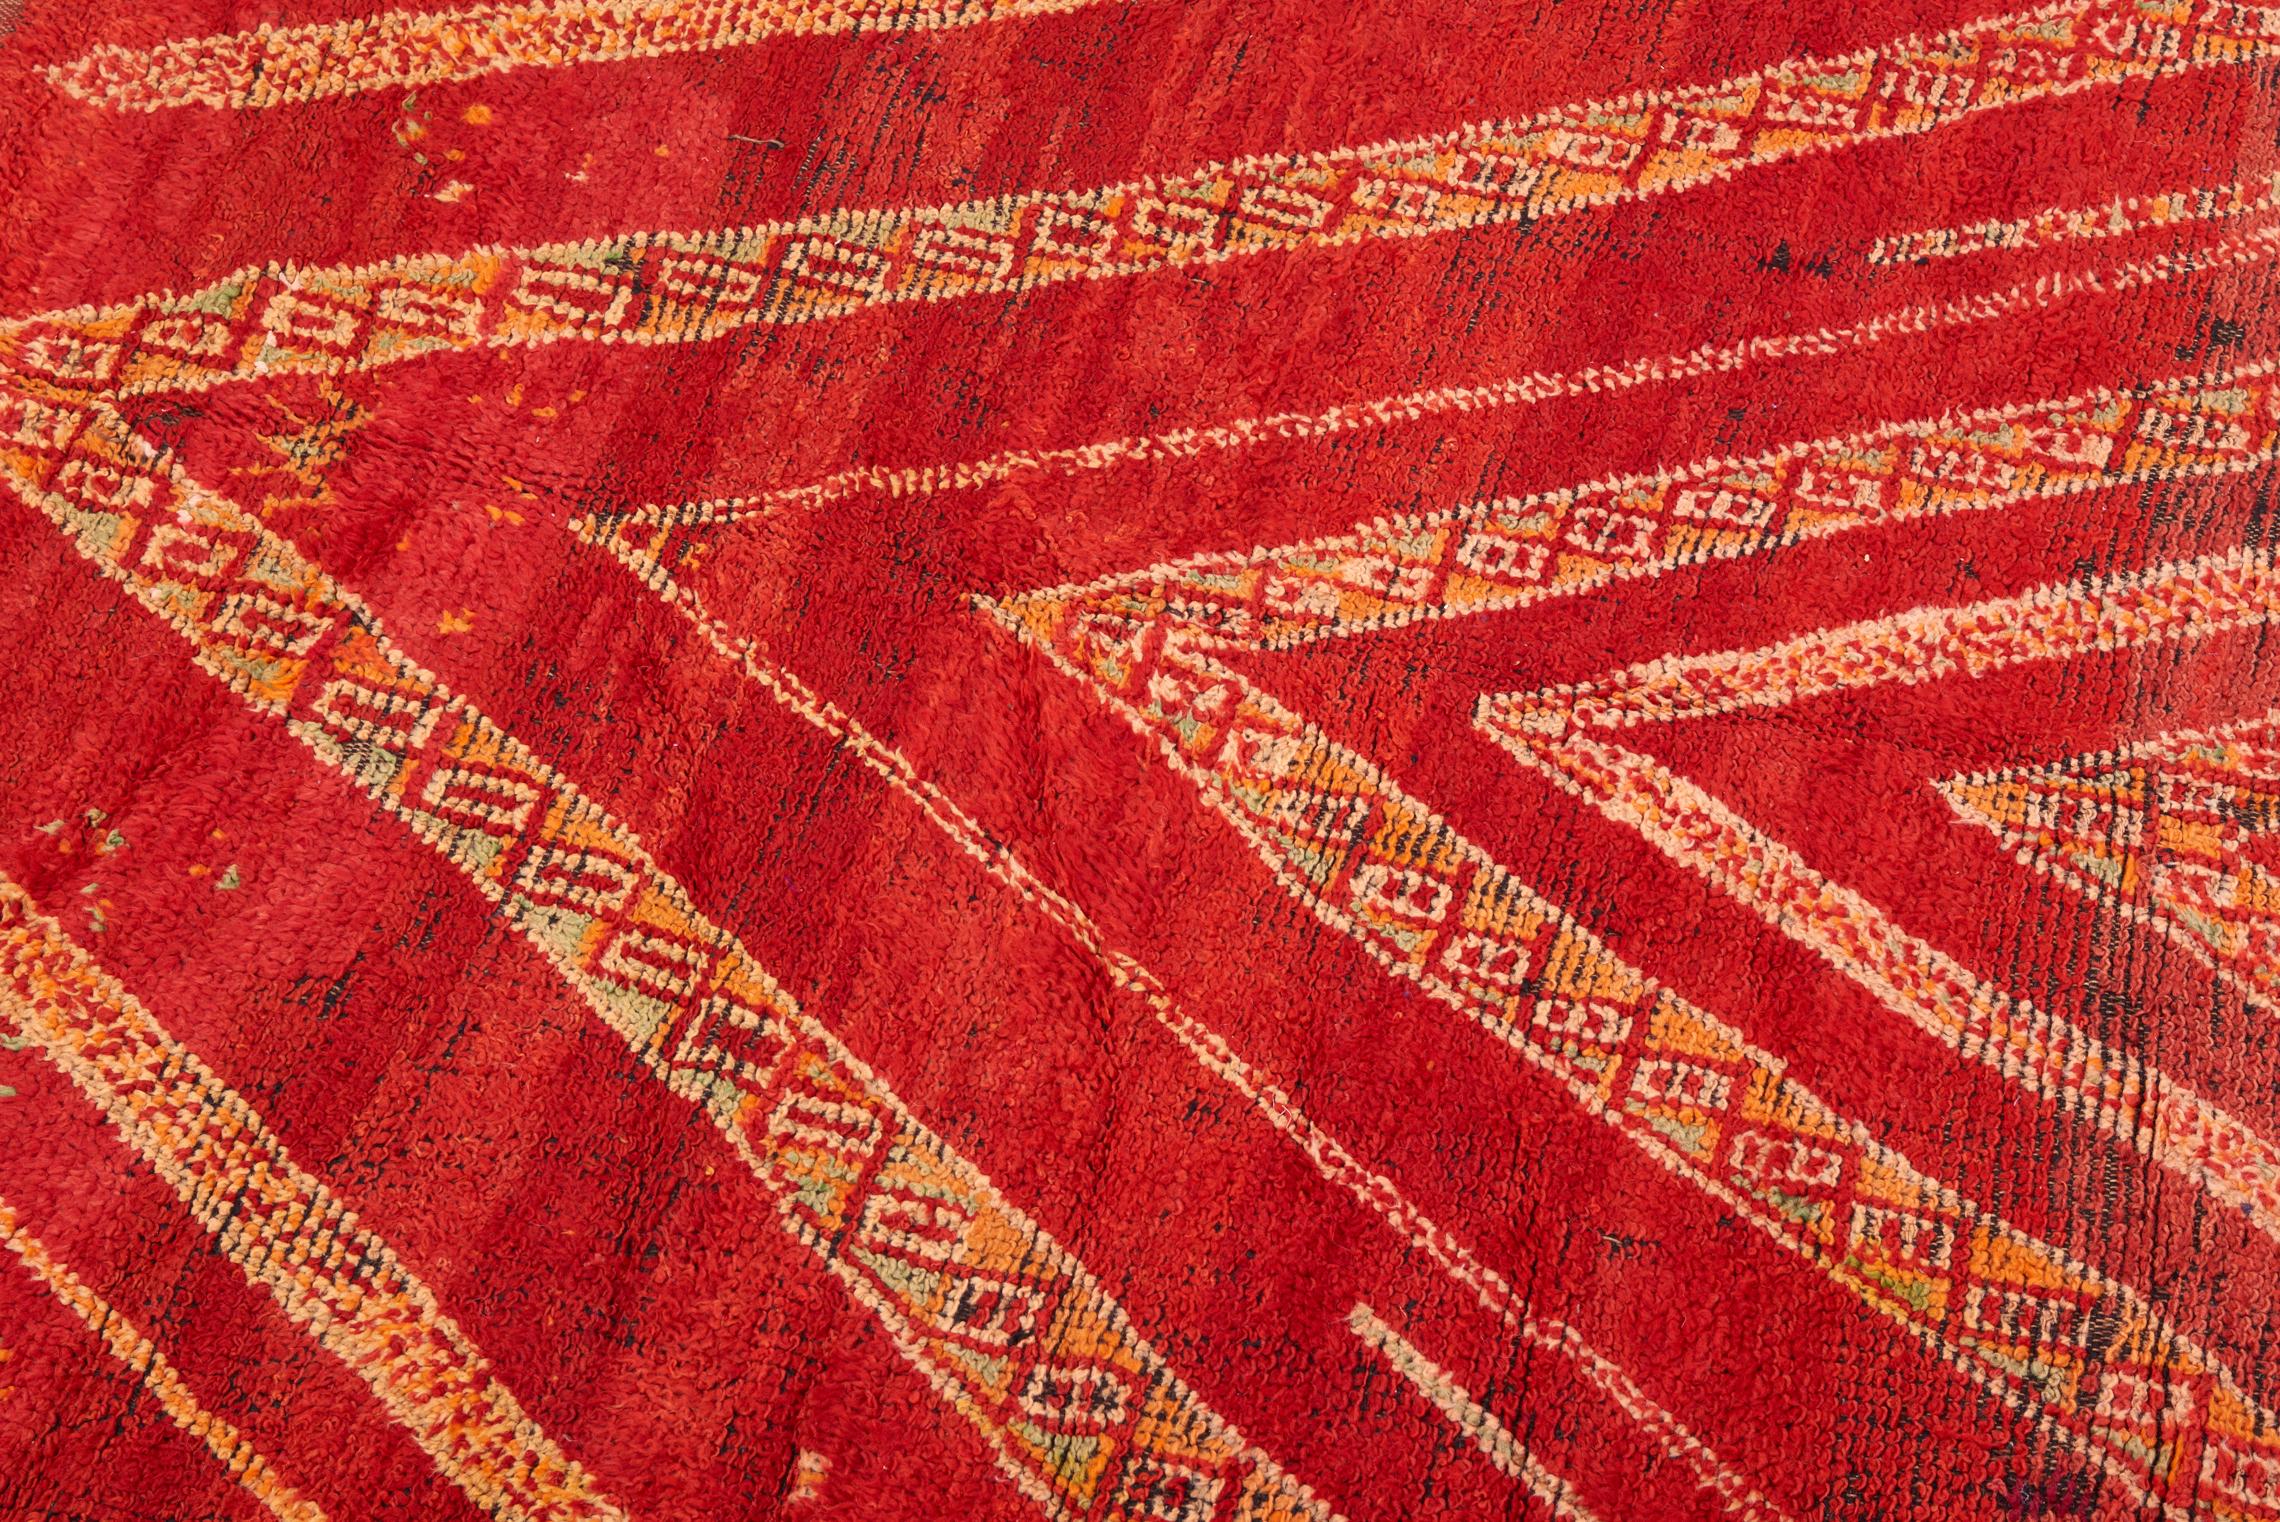 Zaiane Carpet, Morocco 20th Century In Good Condition For Sale In Berlin, DE